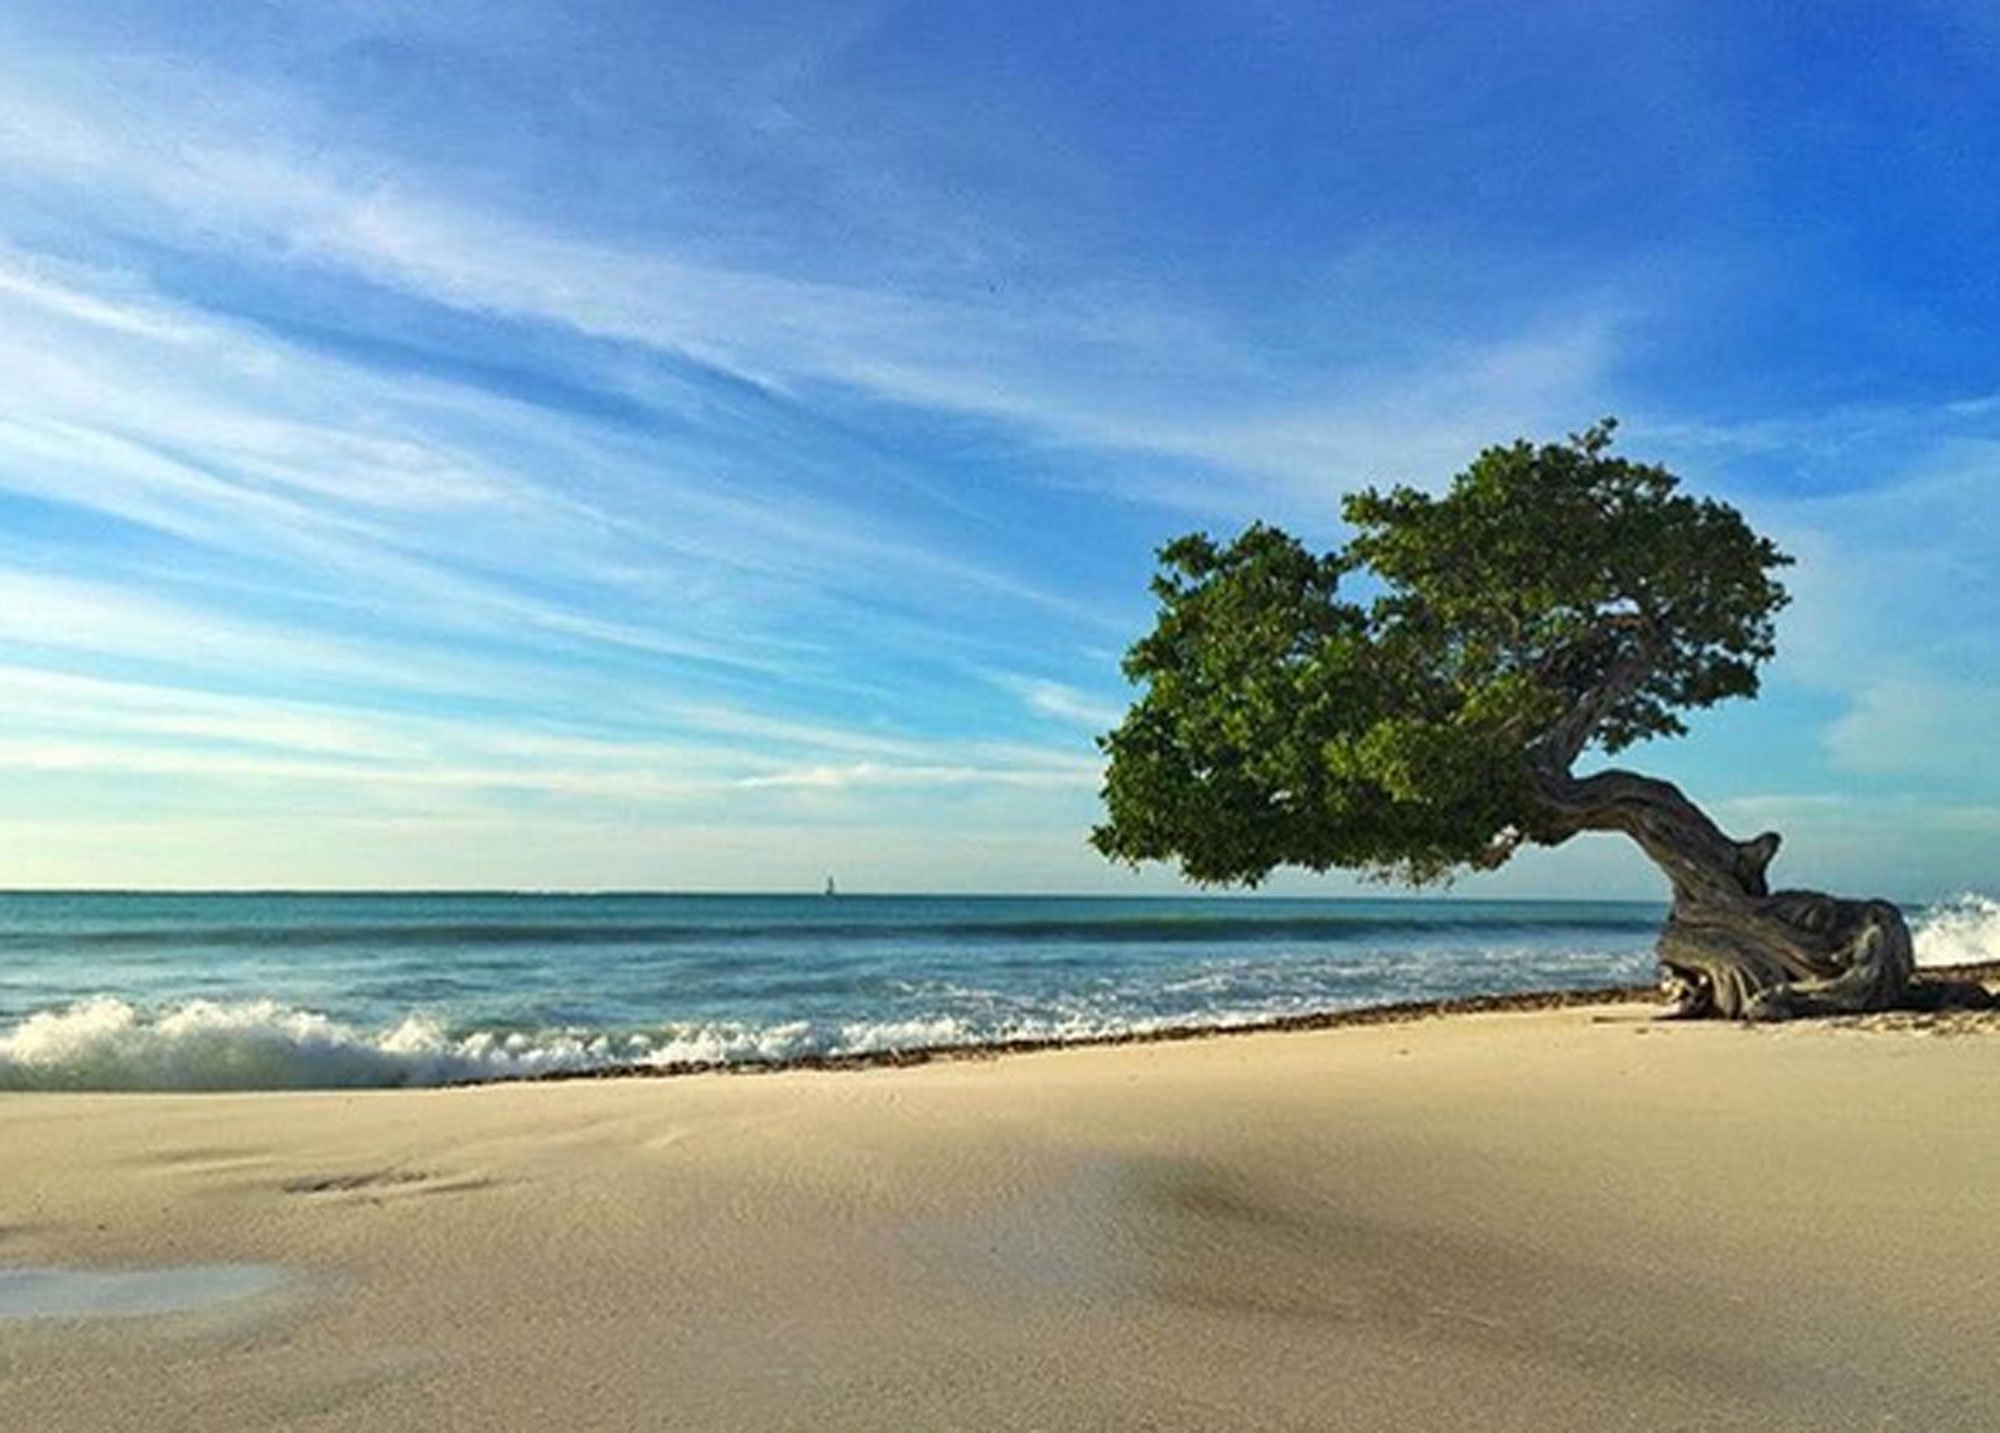 2018全球十大最美海滩榜单出炉 巴西摘得桂冠